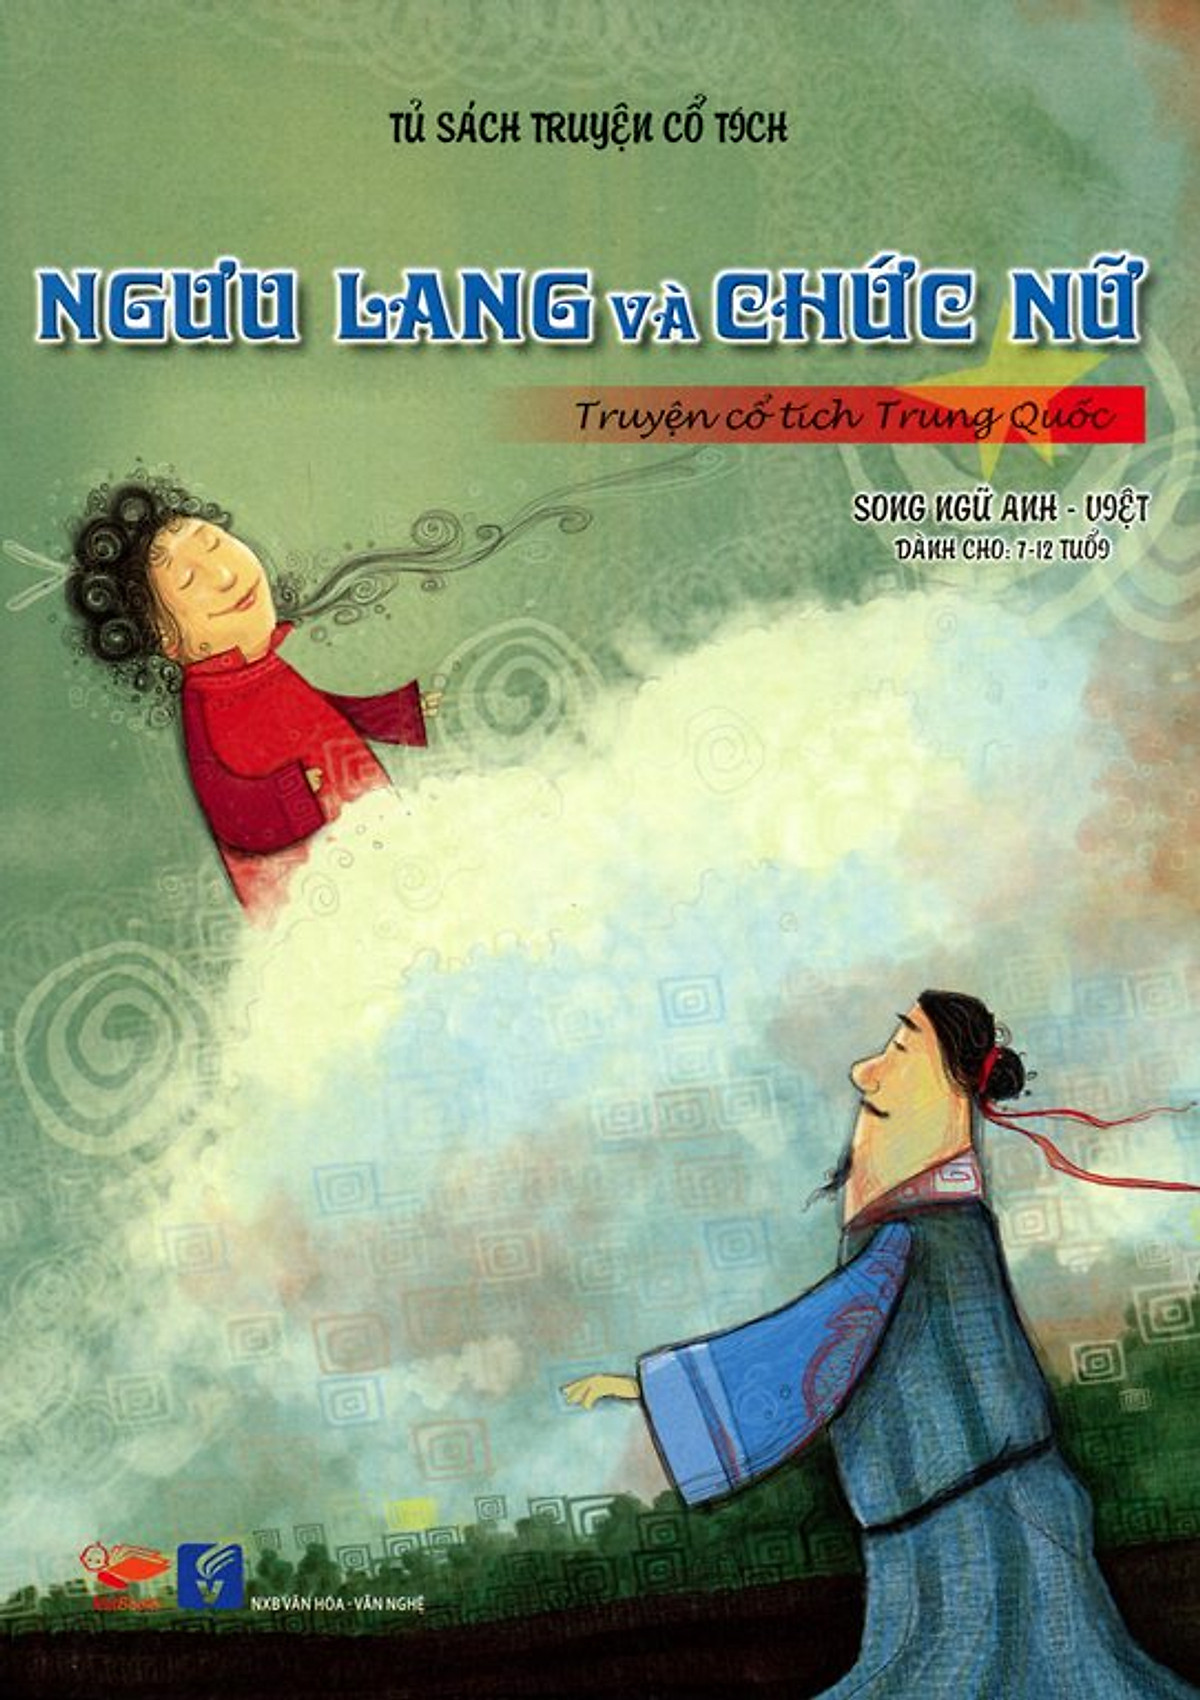 Tủ Sách Truyện Cổ Tích - Ngưu Lang Và Chức Nữ (Song Ngữ Anh - Việt)